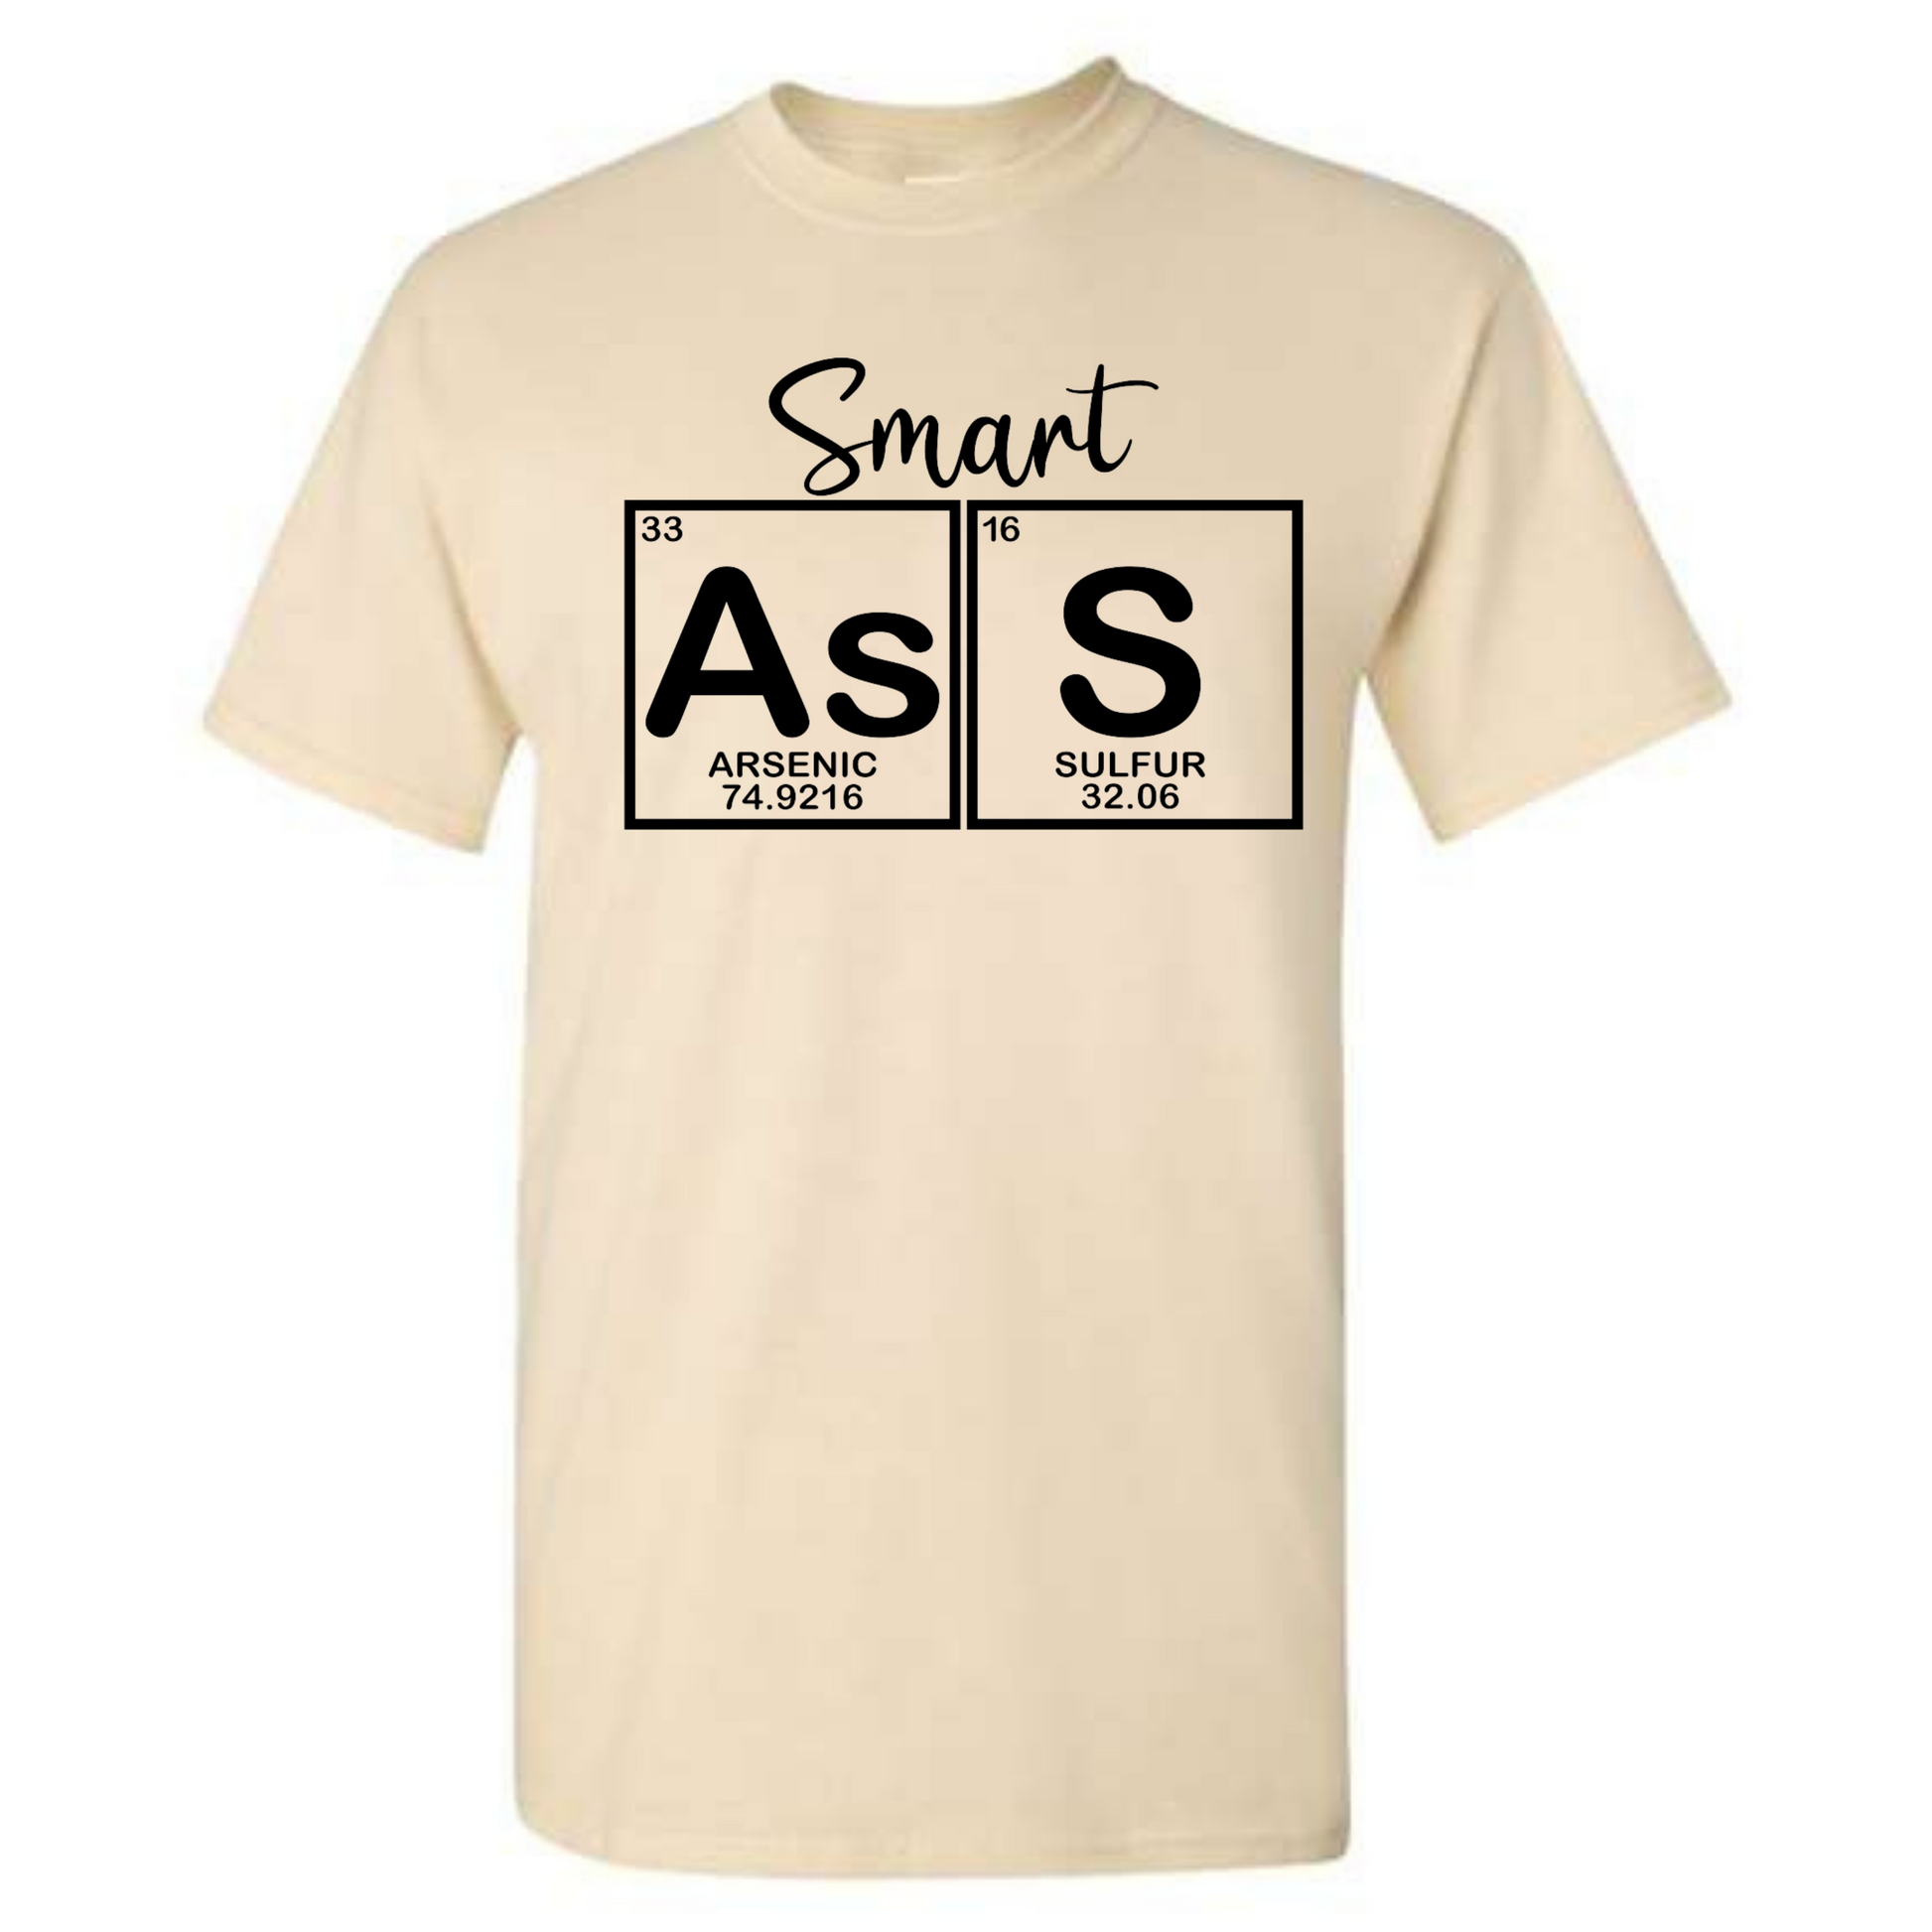 Smart Ass - Graphic T-Shirt - Mister Snarky's